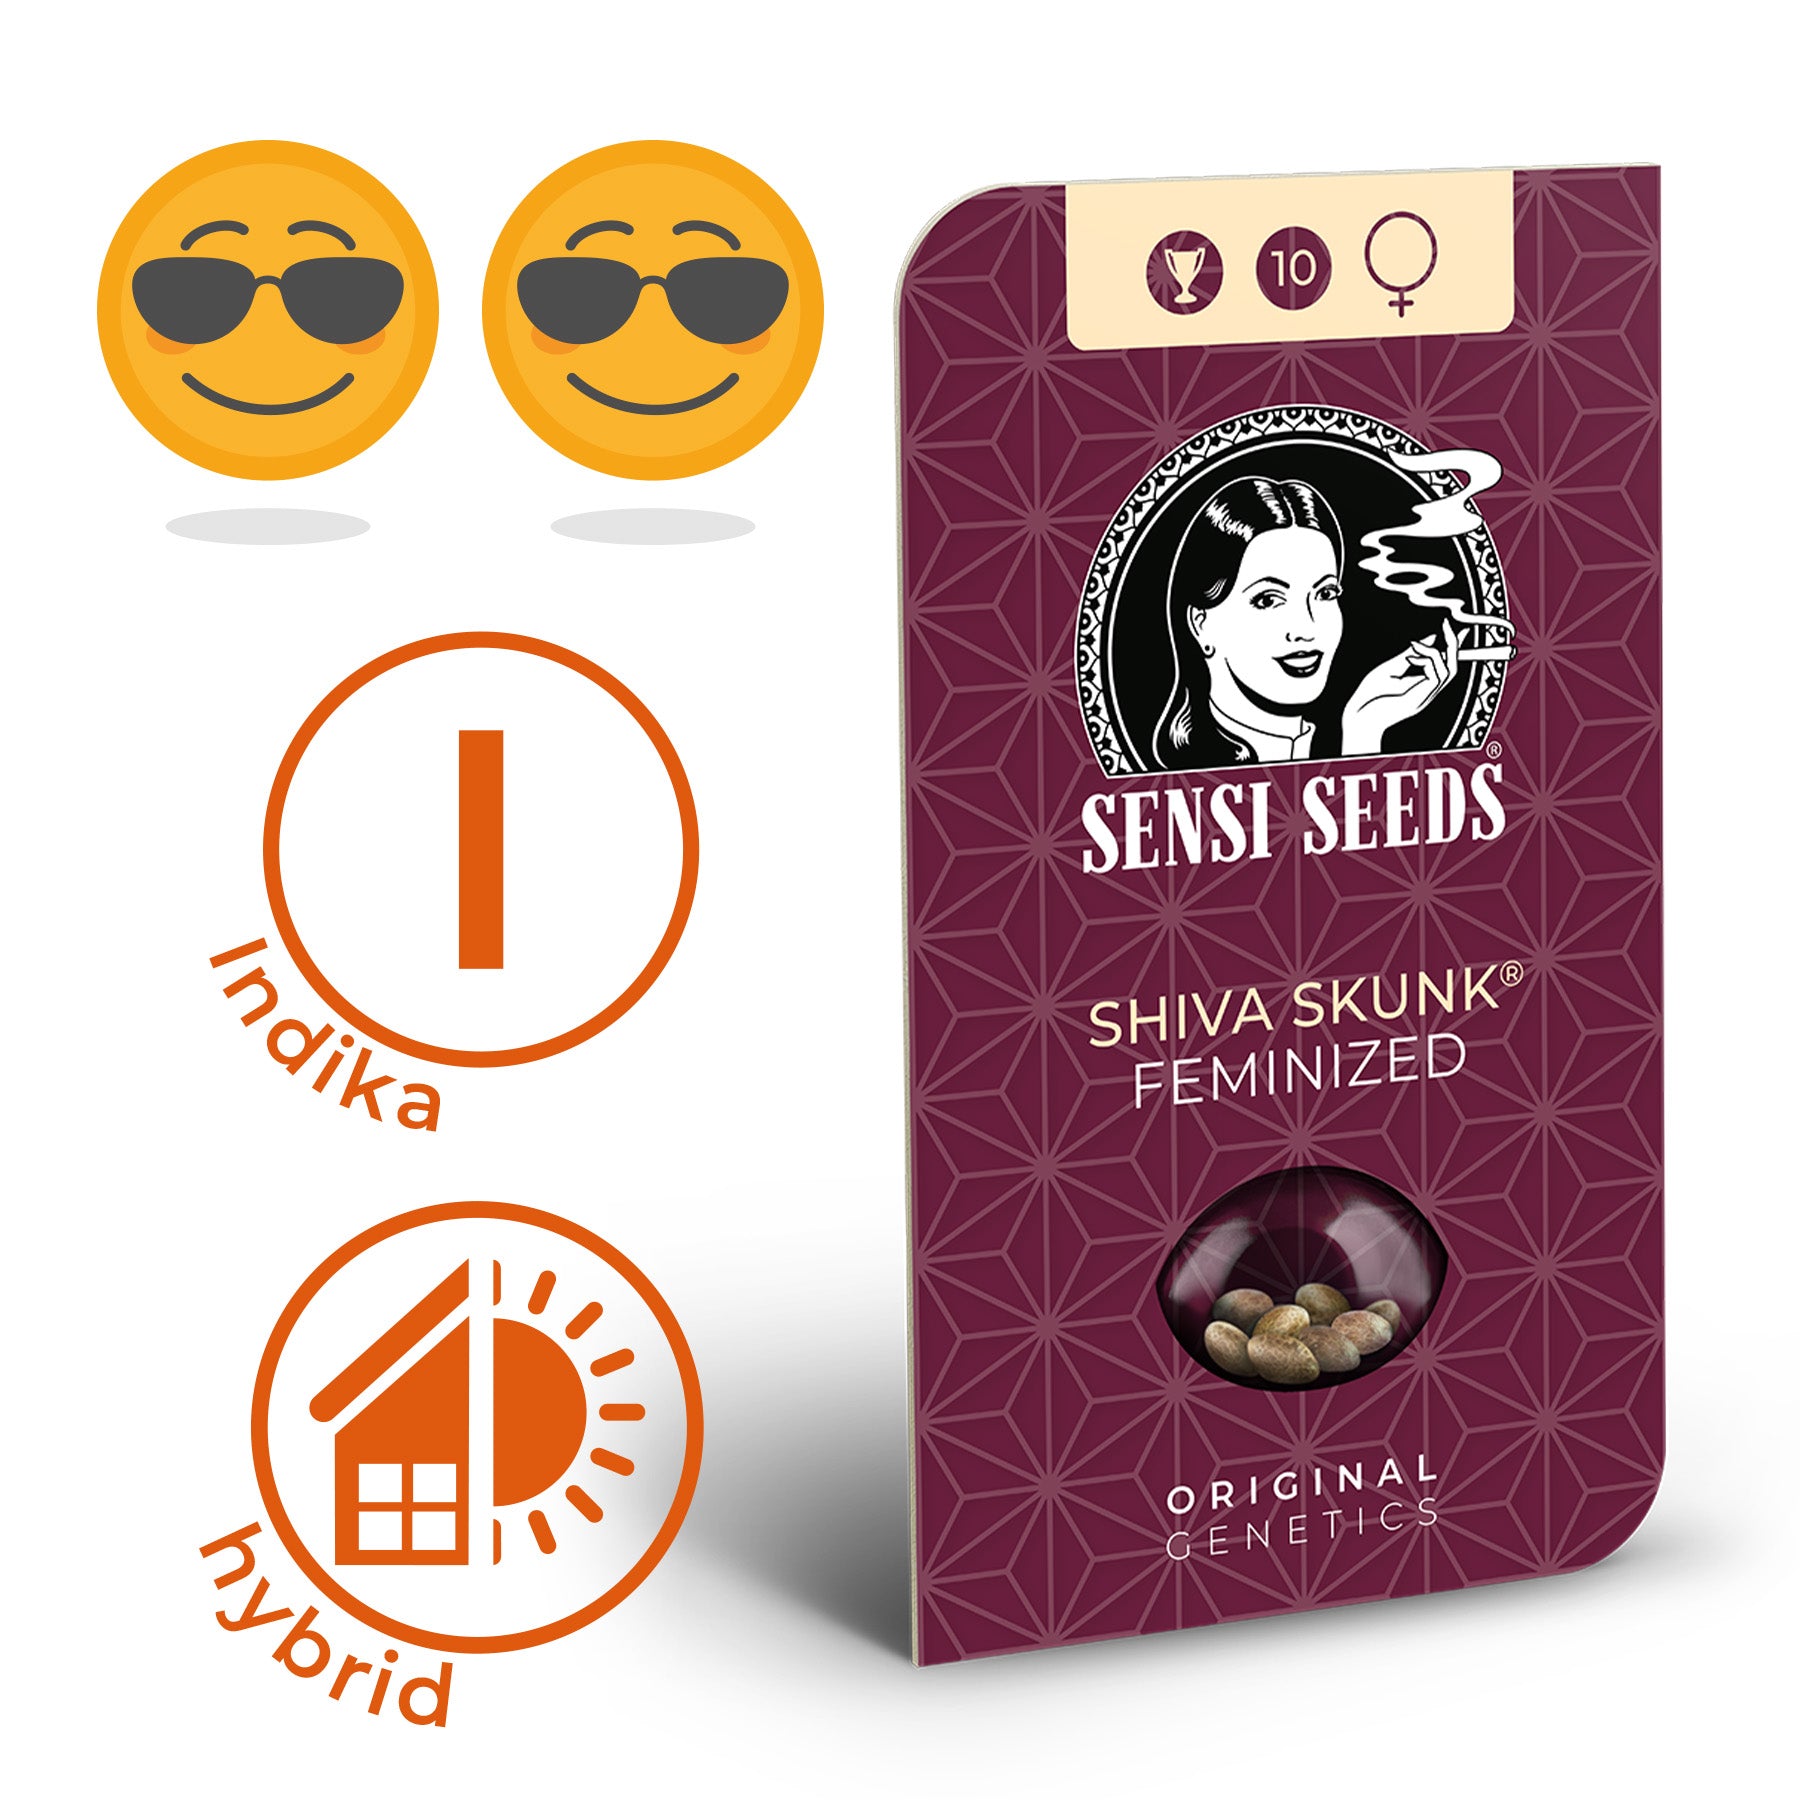 Shiva Skunk Femin. Hanfsamen bzw. Cannabis Samen mit Beschreibung der Wirkung (sehr entspannend, Ruhe) und Sorte (Indica)